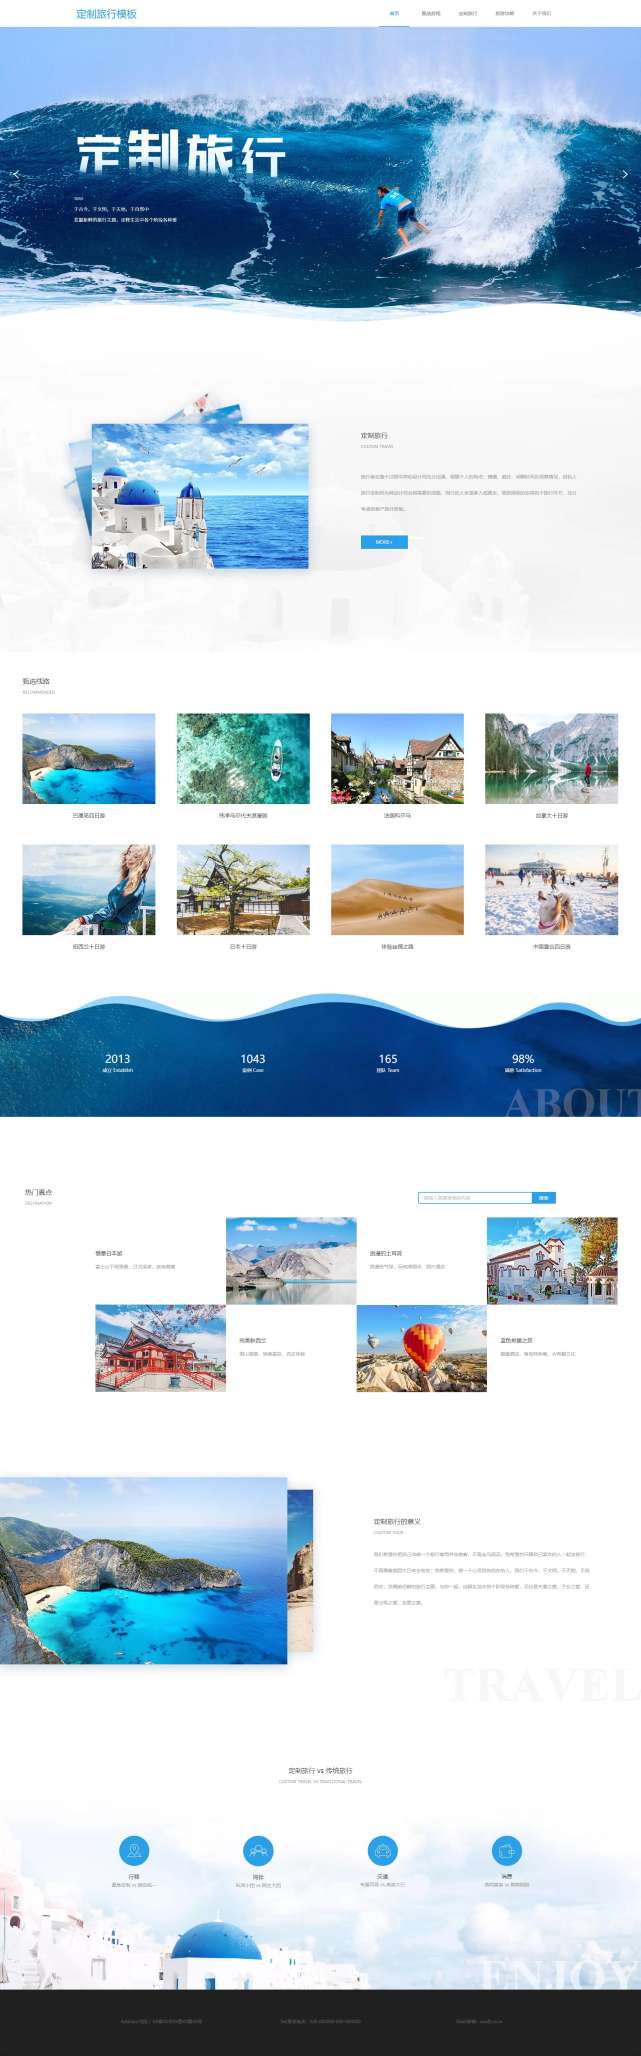 精品定制旅行出游网页模板